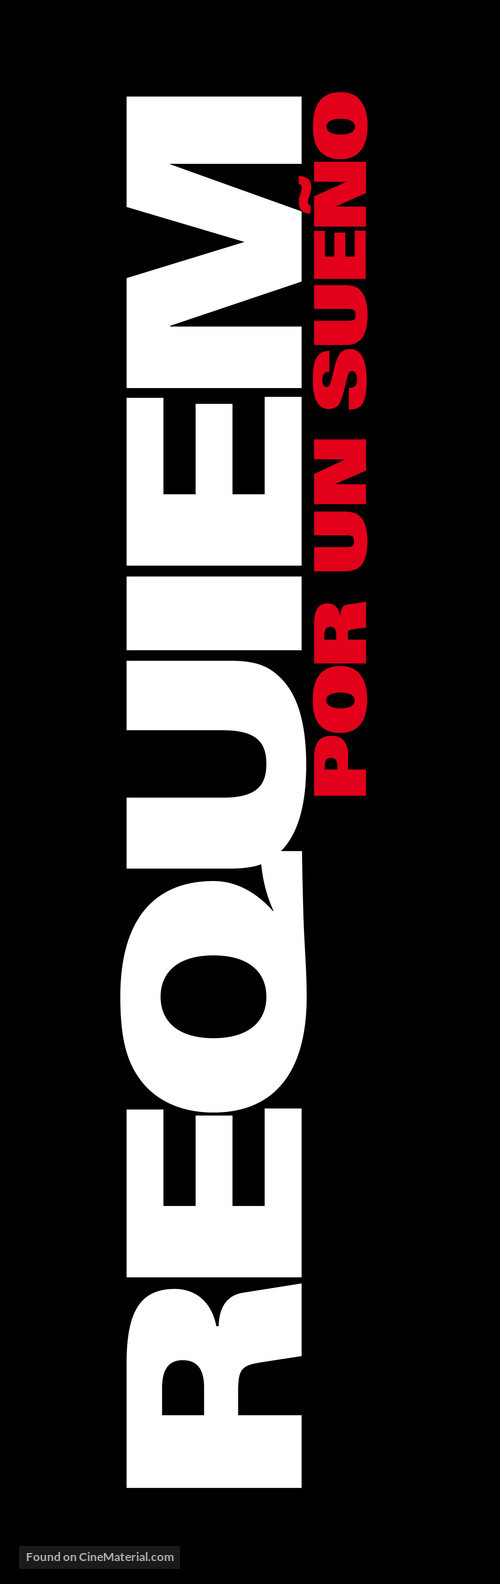 Requiem for a Dream - Spanish Logo